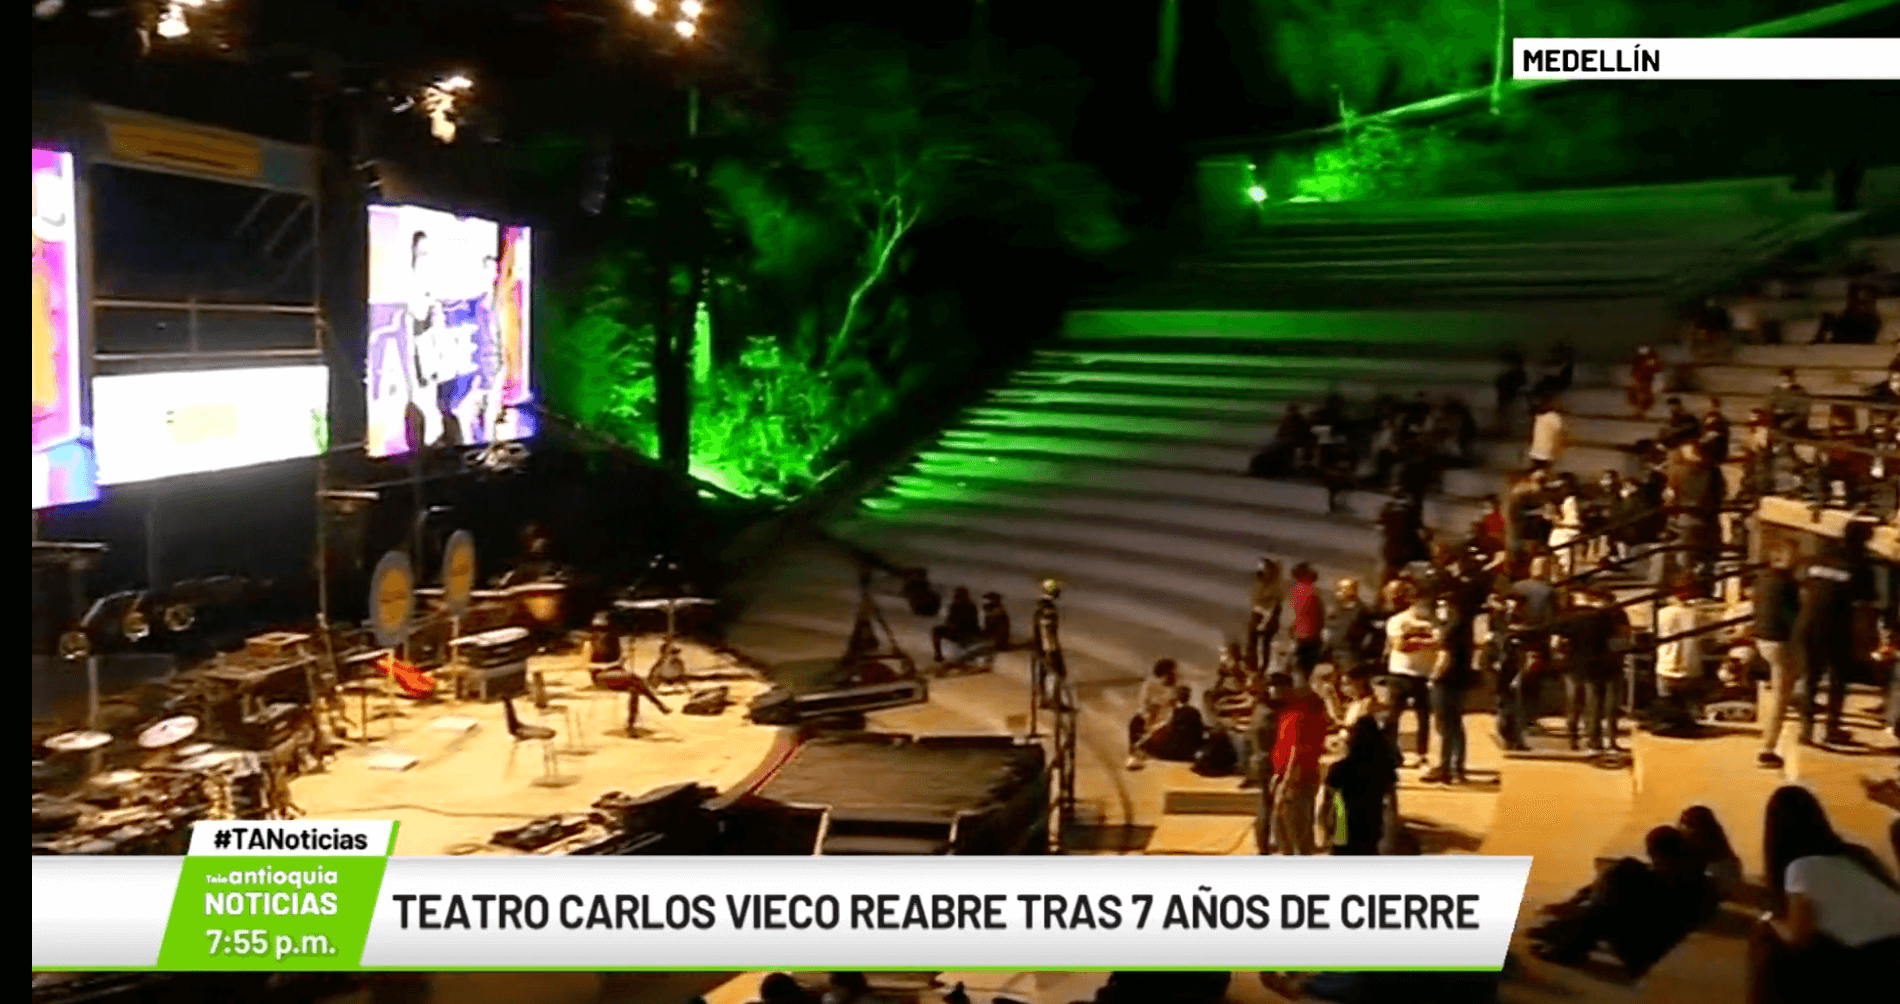 Teatro Carlos Vieco reabre tras 7 años de cierre